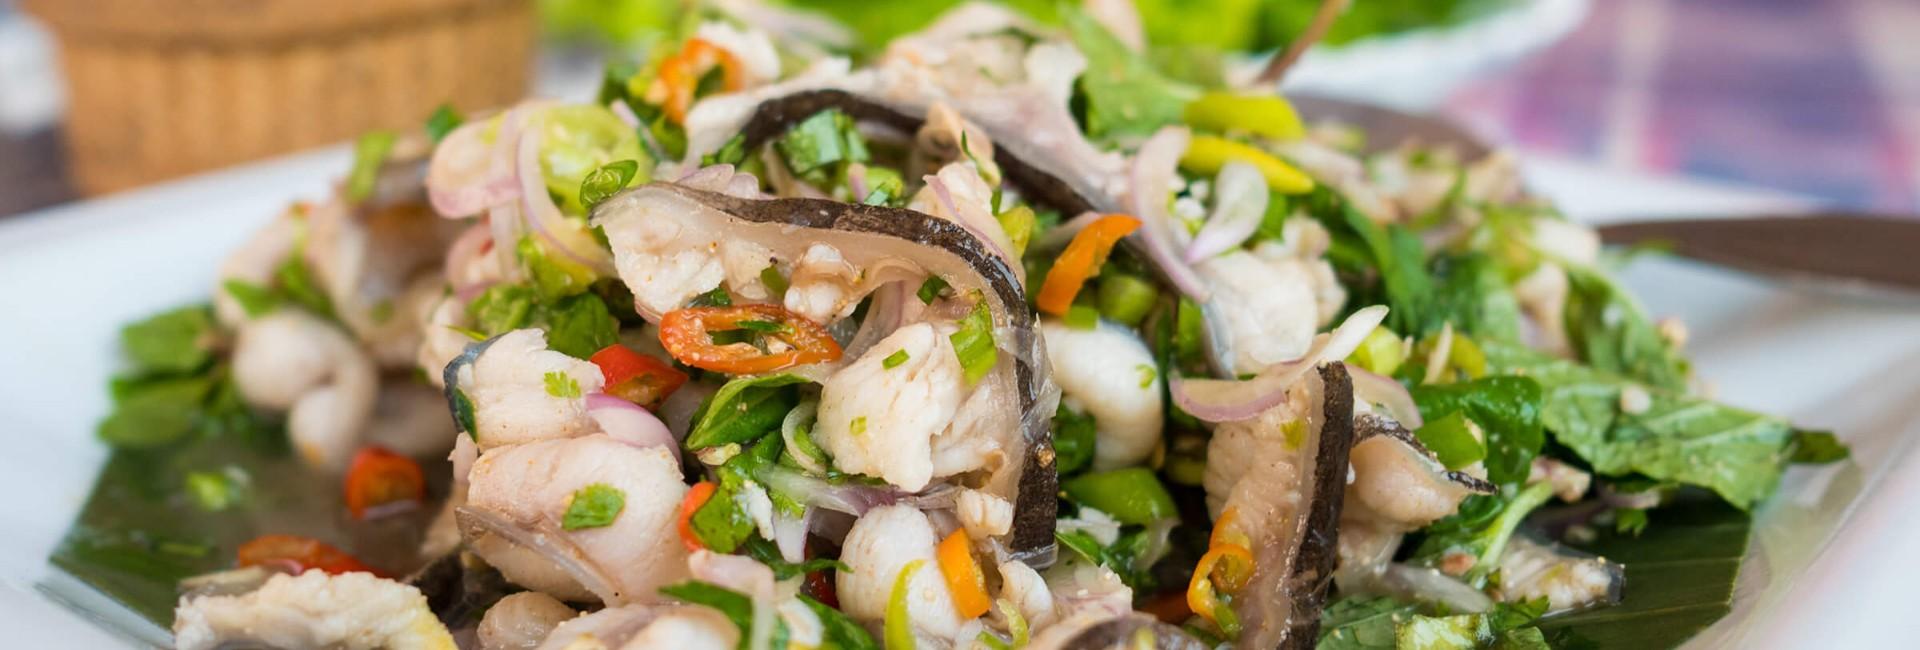 TOP 15 des spécialités à découvrir de la gastronomie laotienne